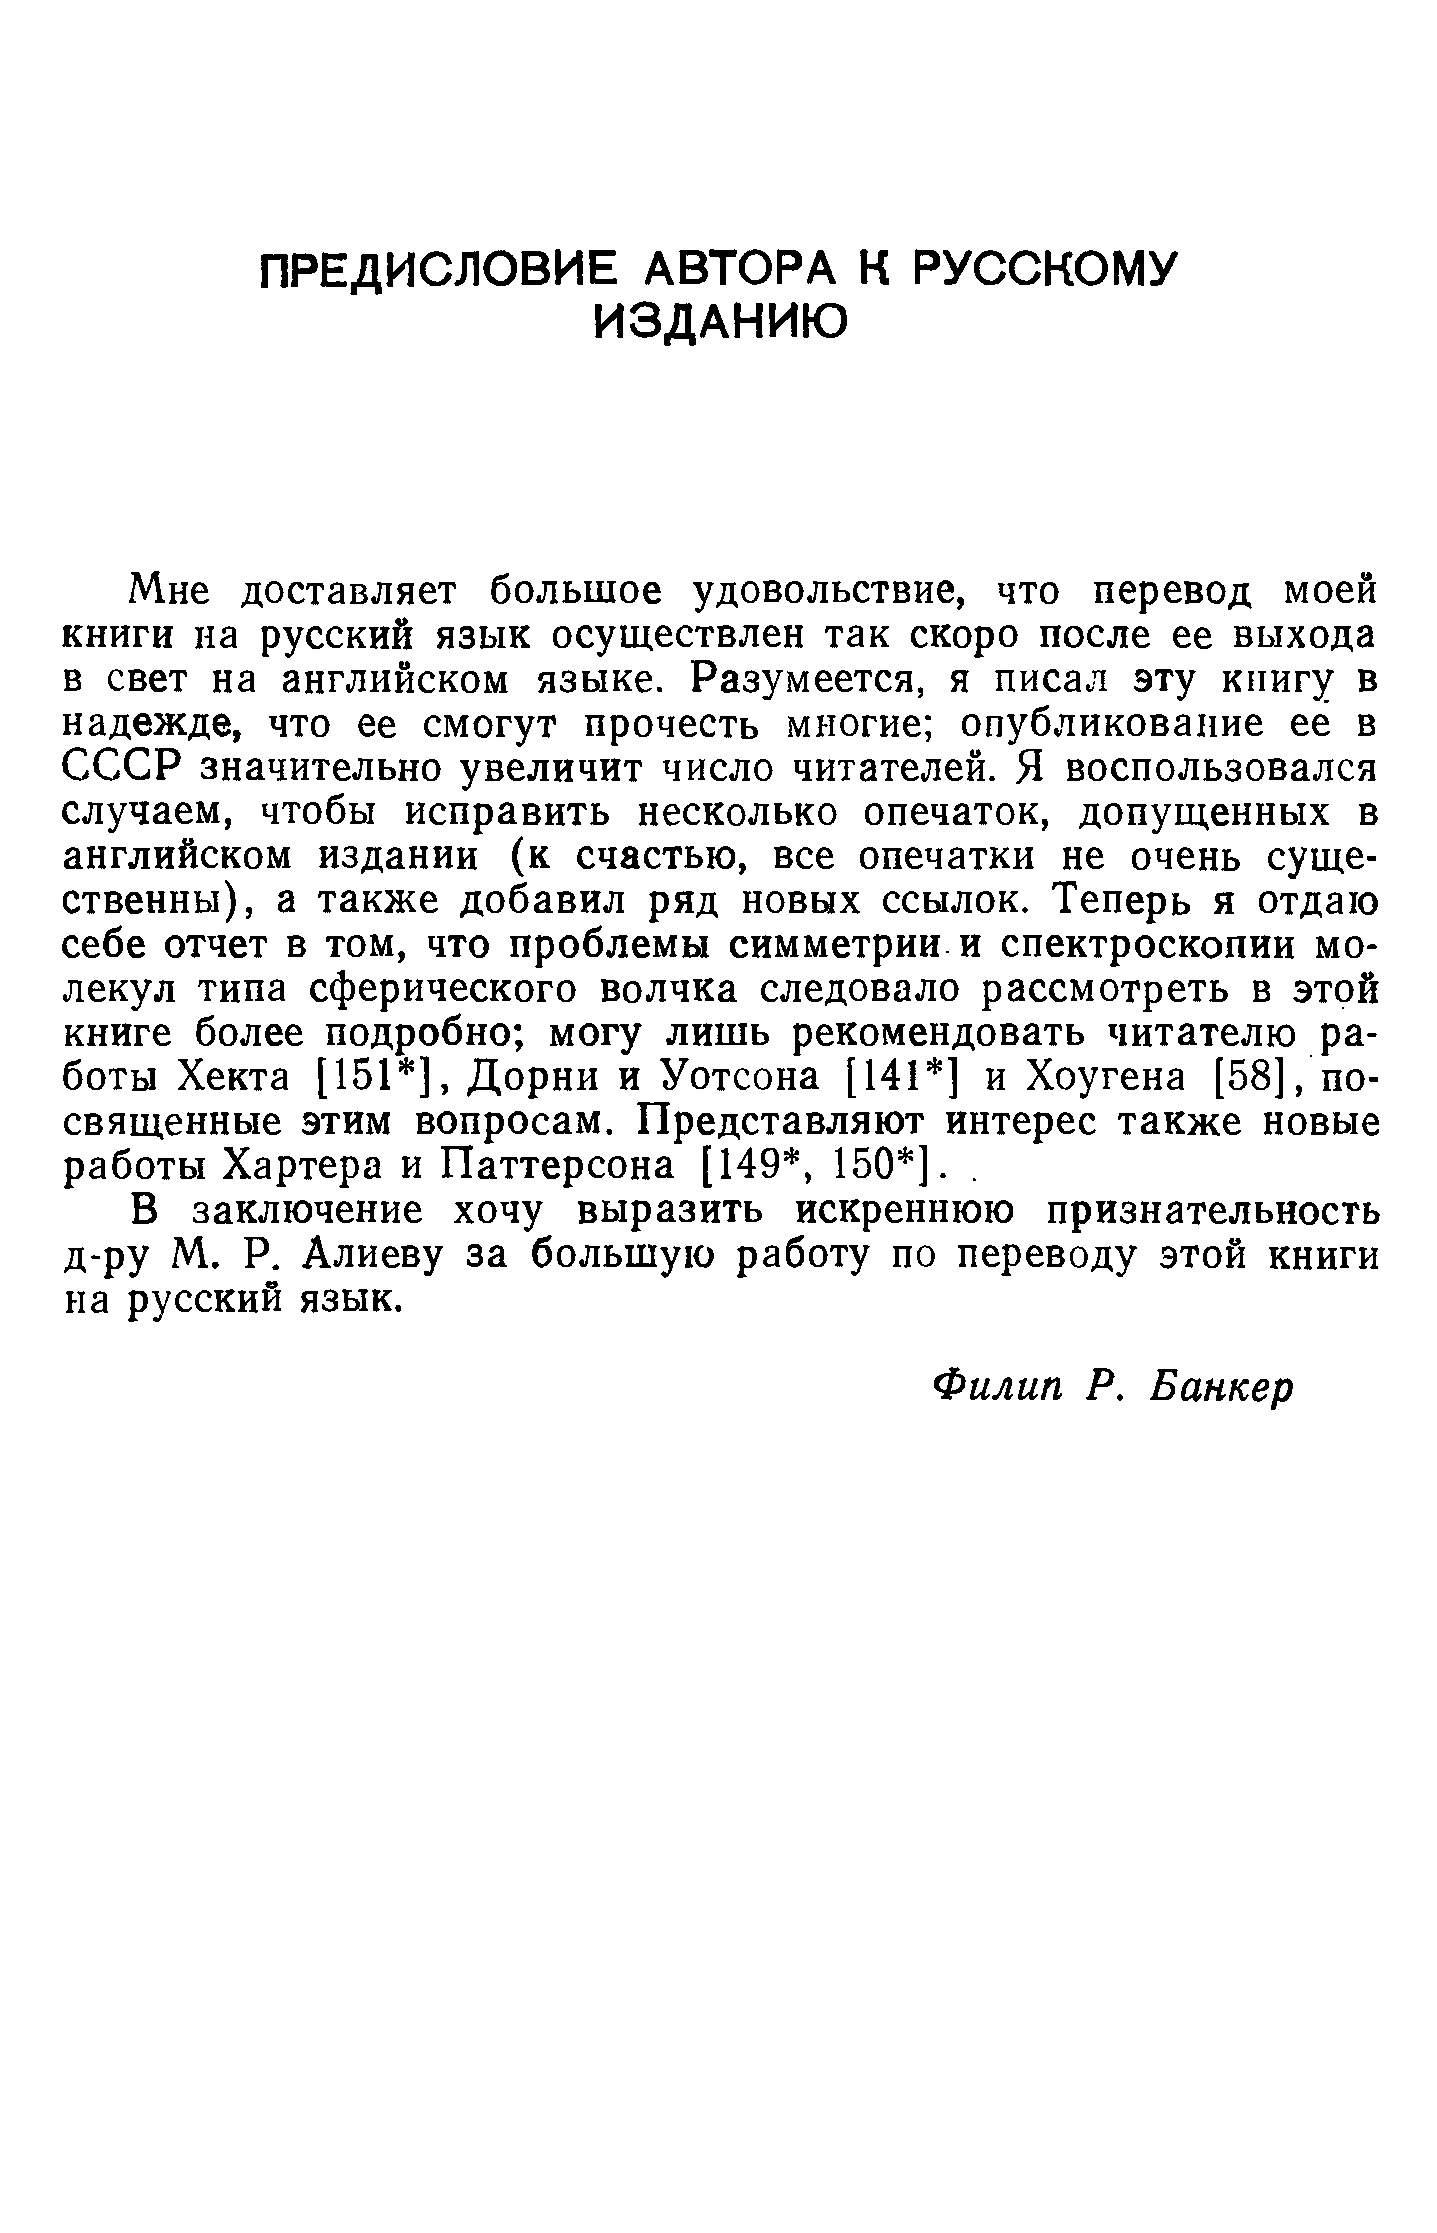 В заключение хочу выразить искреннюю признательность д-ру М. Р. Алиеву за большую работу по переводу этой книги на русский язык.
